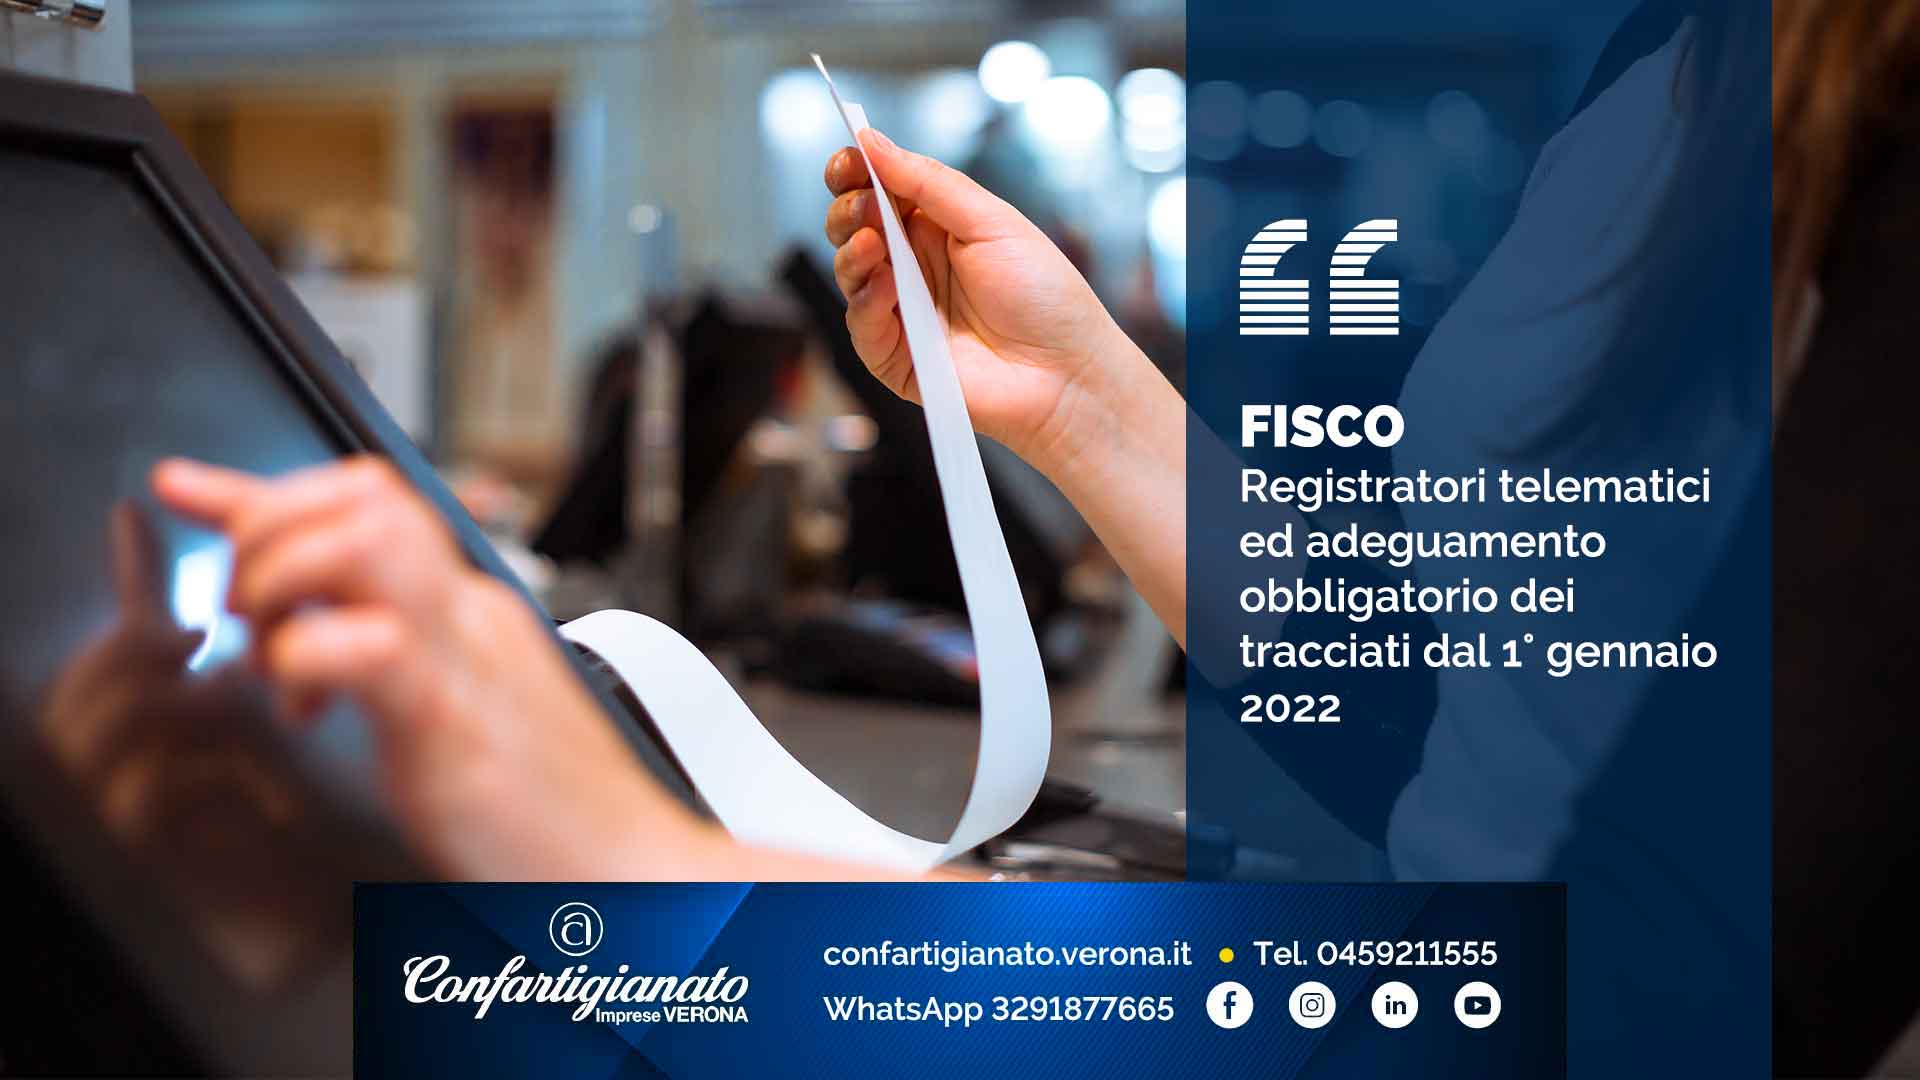 FISCO – Registratori telematici ed adeguamento obbligatorio dei tracciati dal 1° gennaio 2022